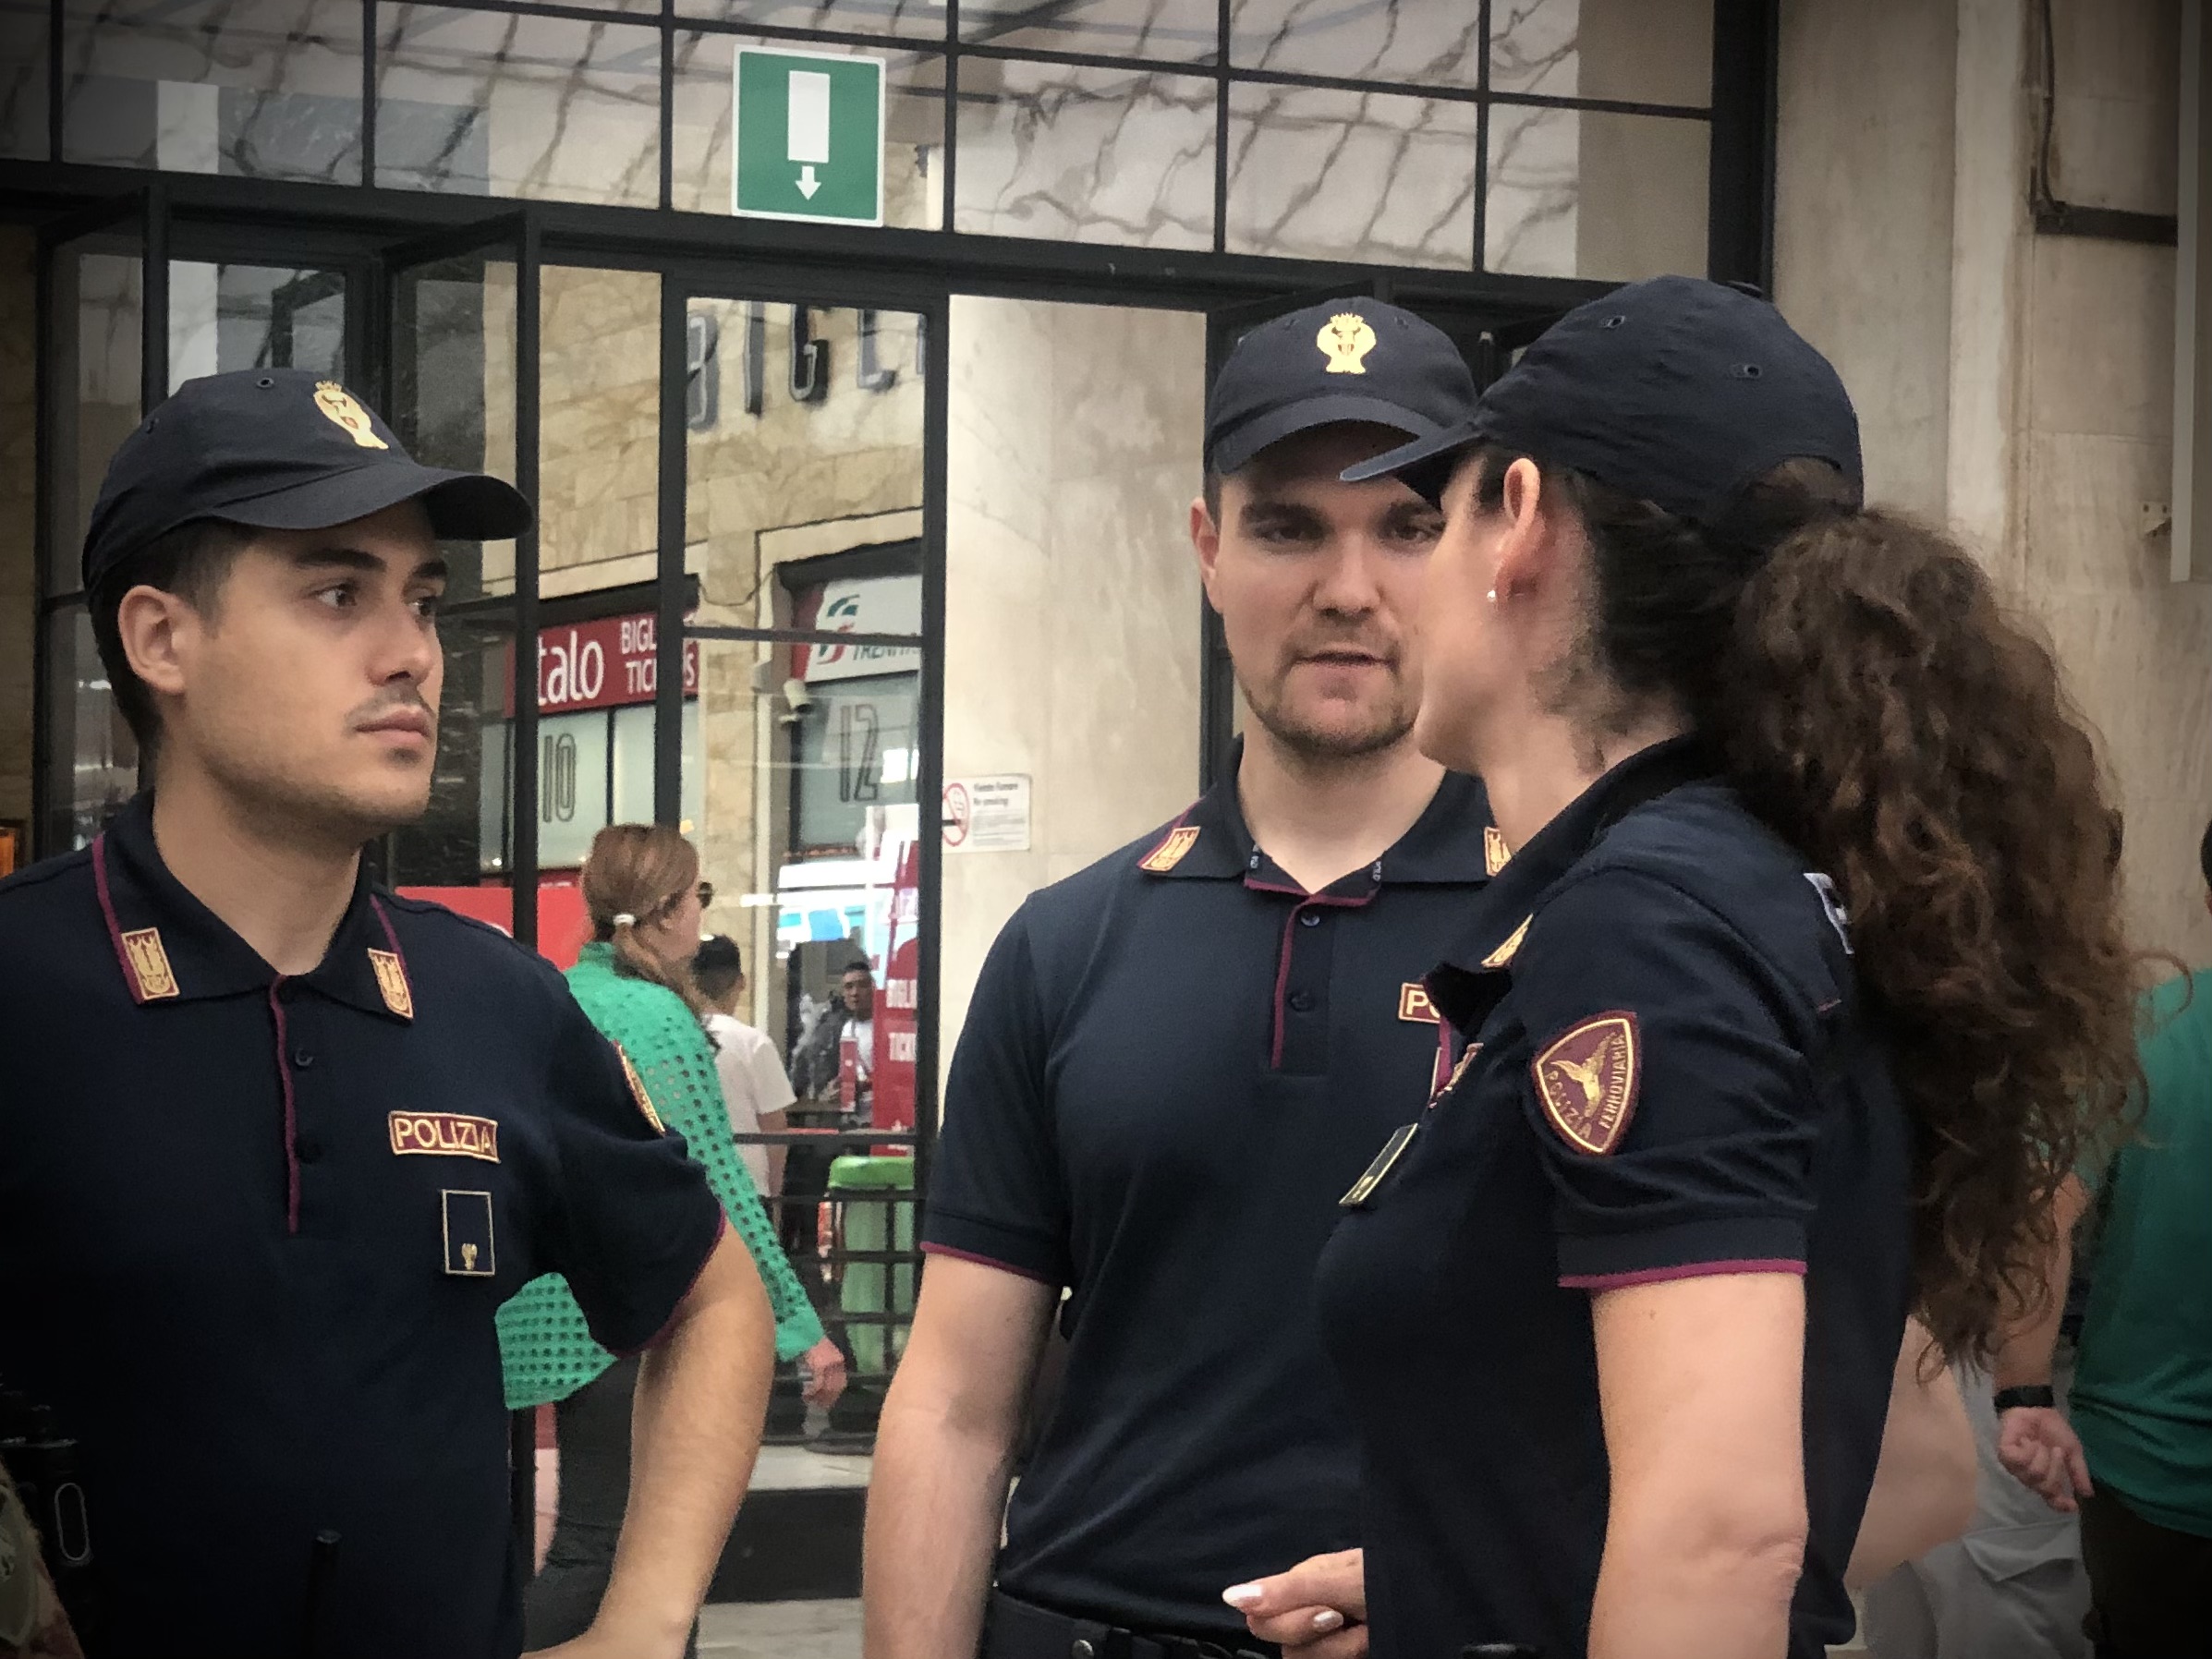 Furto dello zaino ad un giovane turista inglese nei pressi della Stazione Santa Maria Novella: arrestato dalla Polizia di Stato 33enne algerino